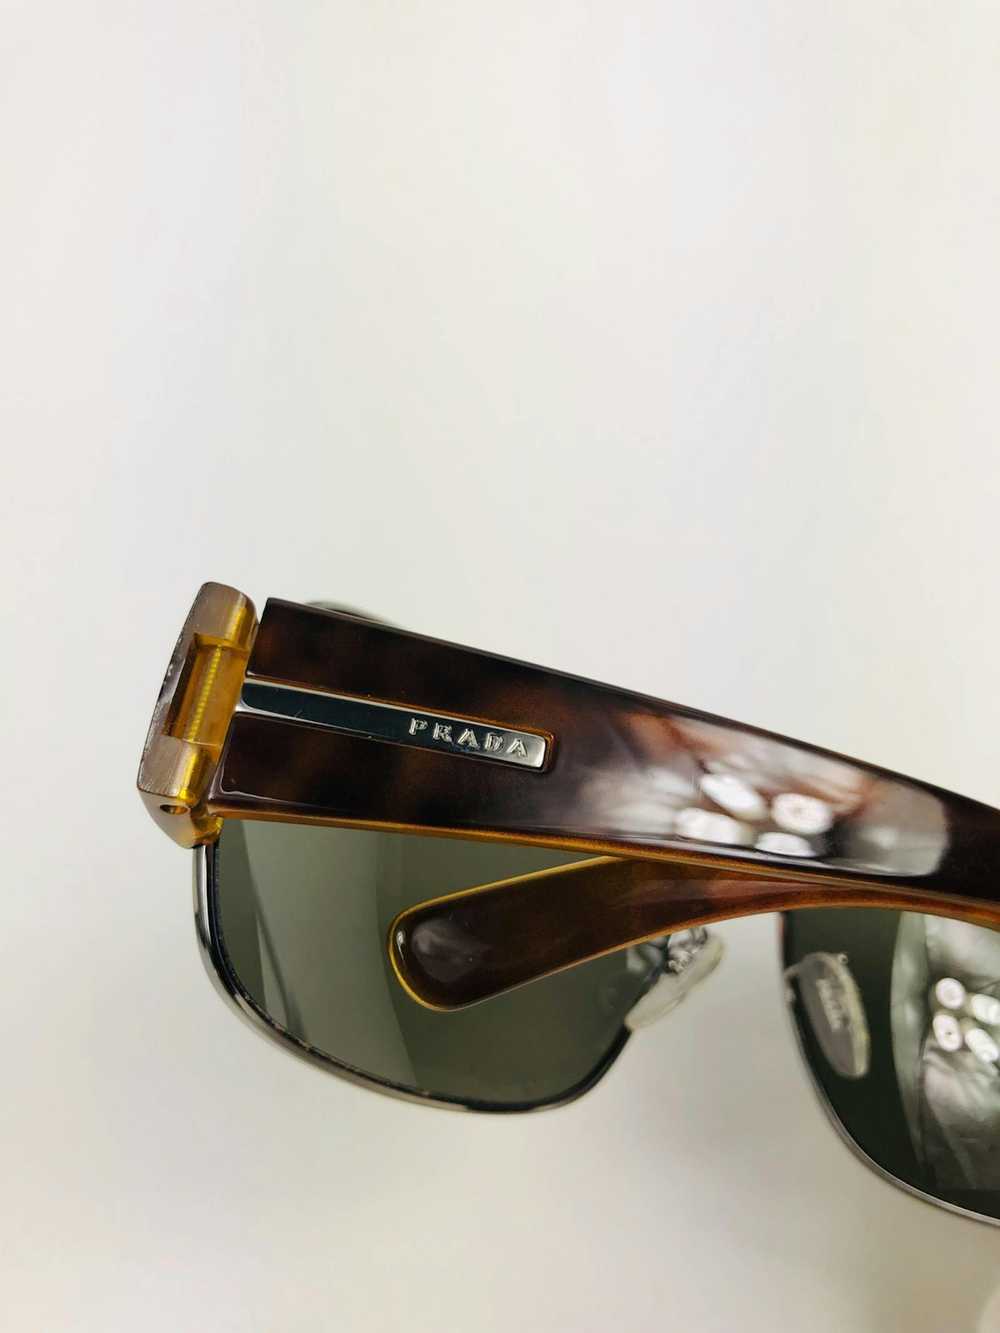 Prada Prada logo sunglasses - image 4